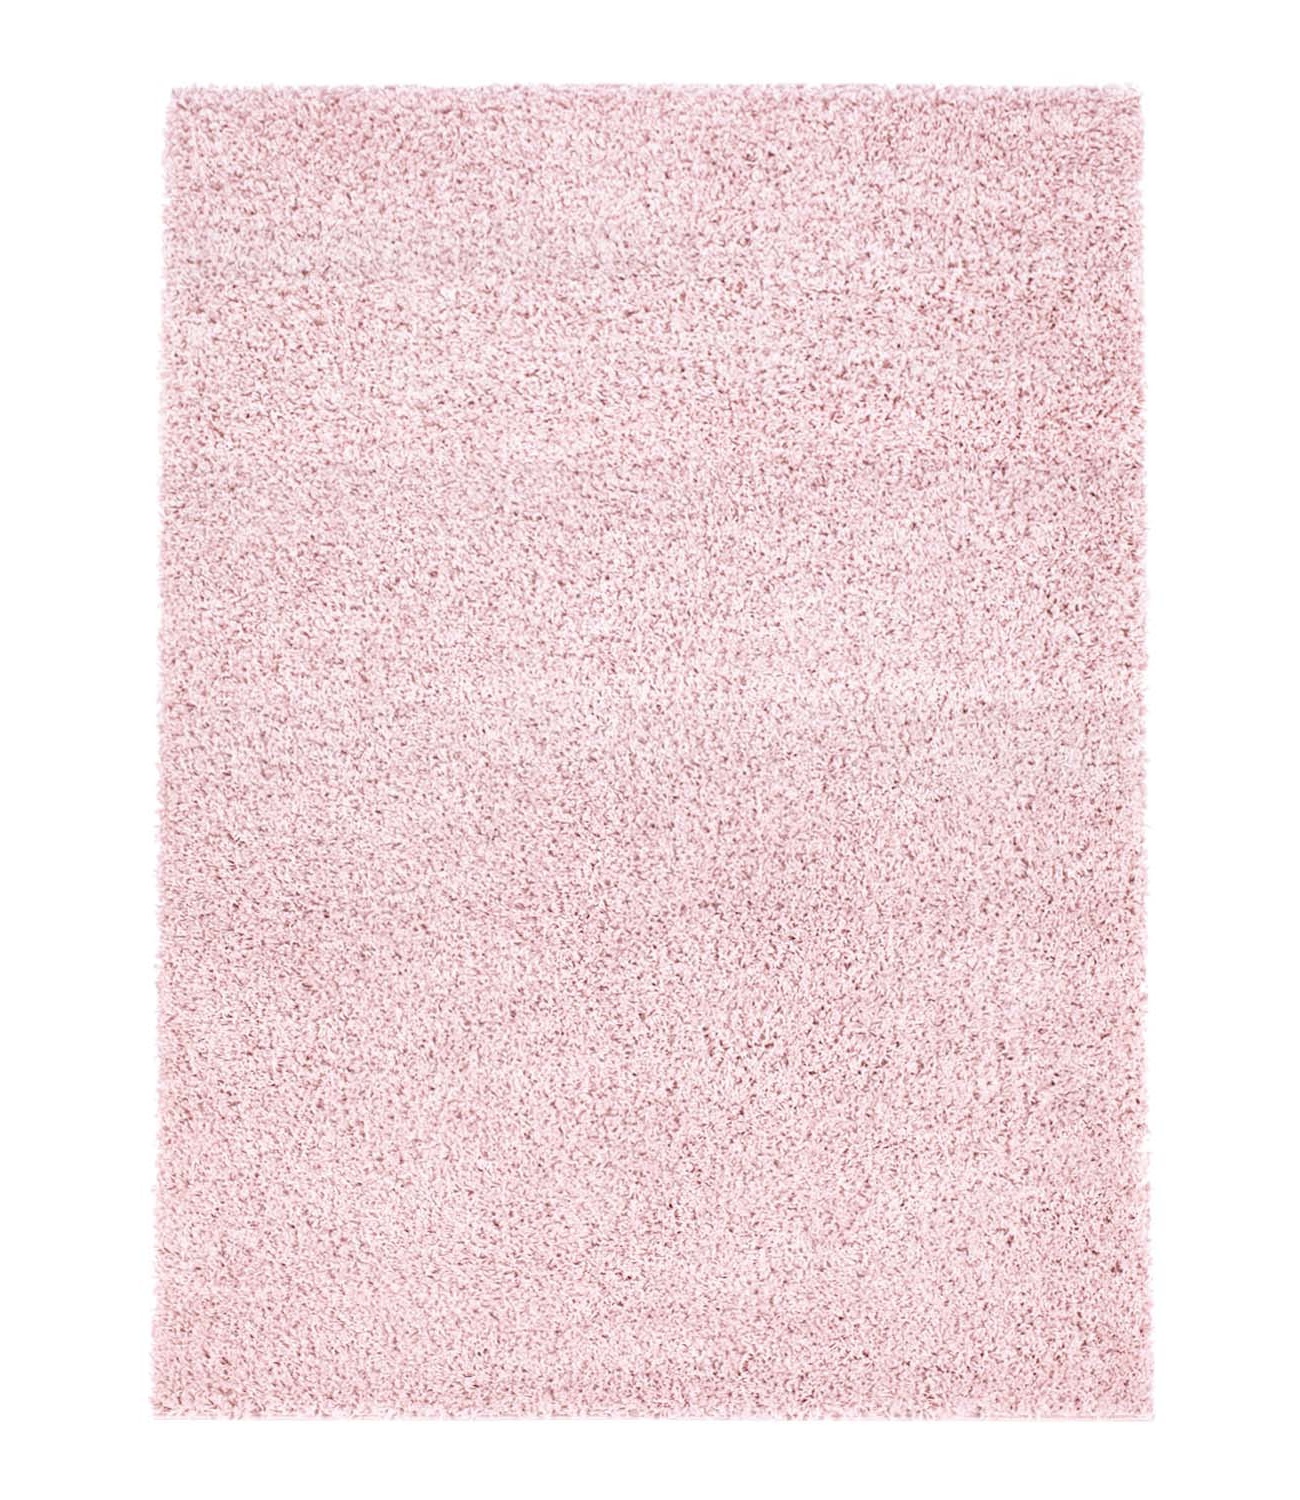 Trim hochflorteppich rosa shaggy teppich rund hochflor wohnzimmer 60x120 cm 80x 150 cm 140x200 cm 160x230 cm 200x300 cm